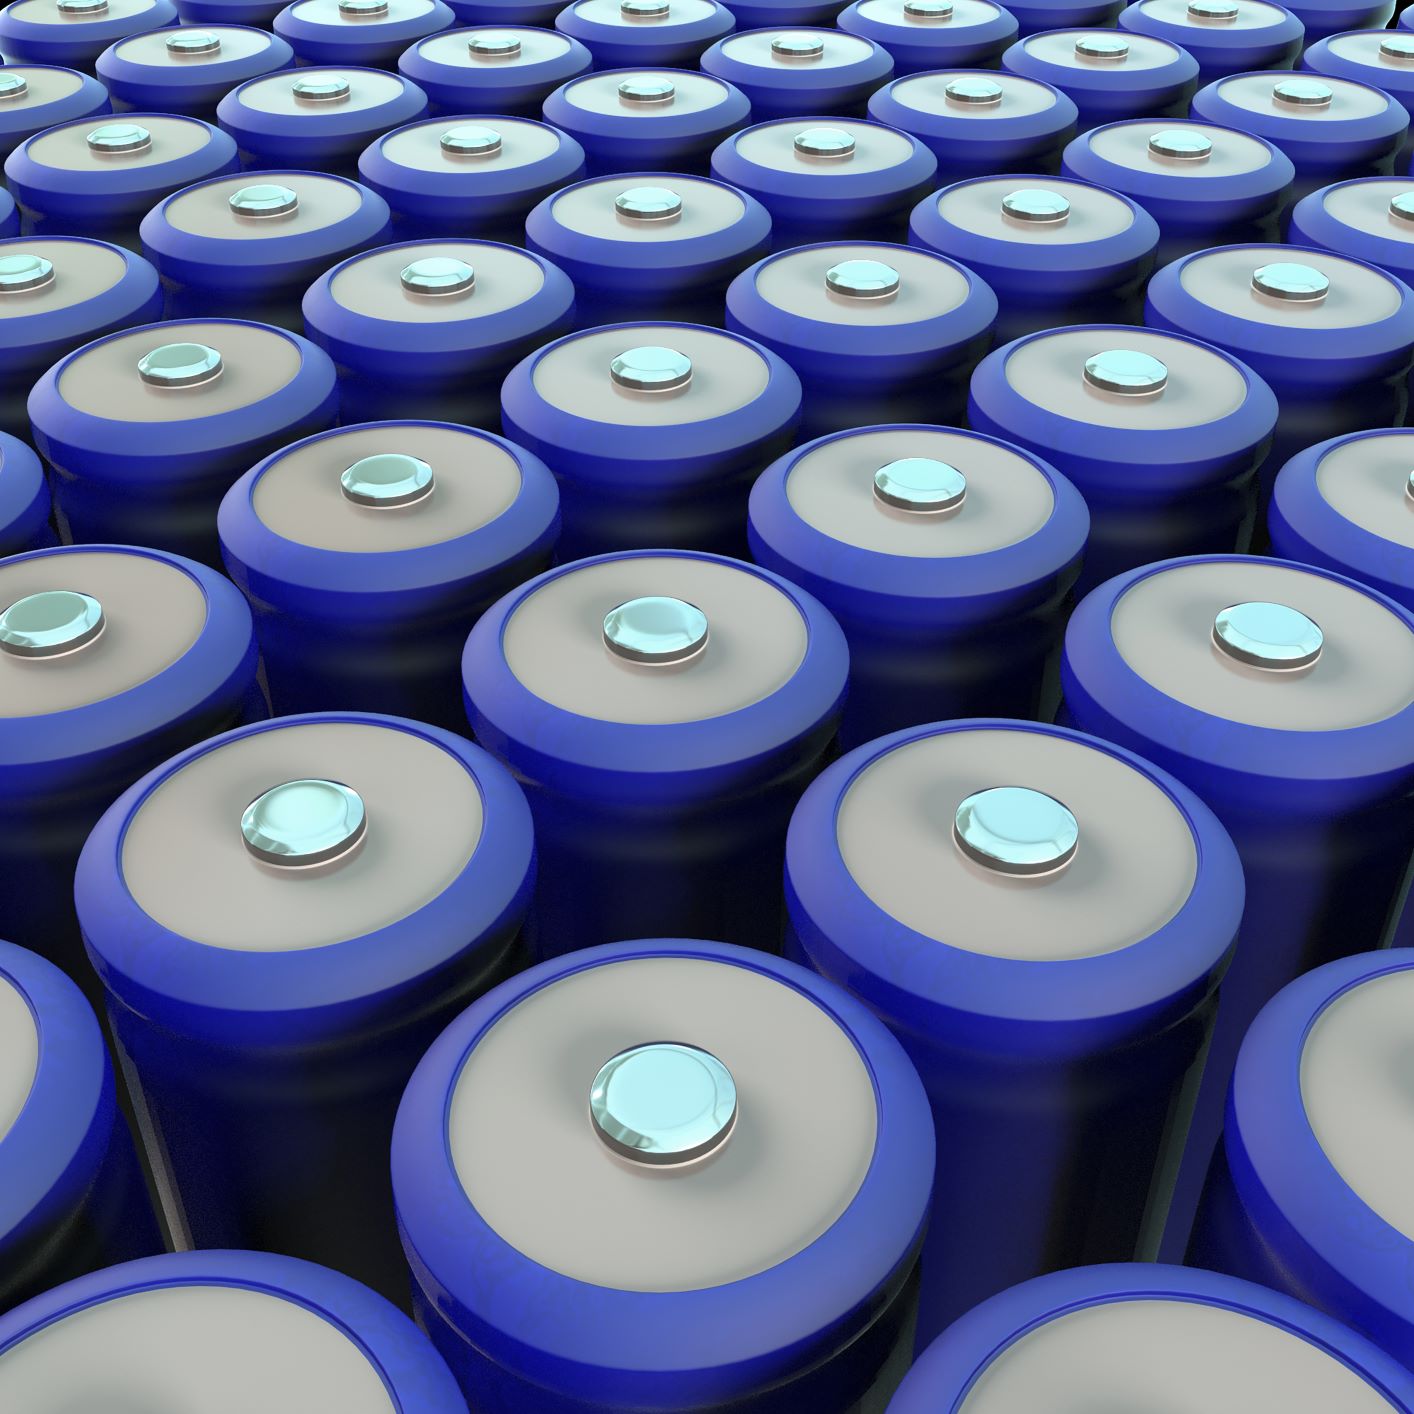 Comunicado de prensa - Se presenta una demanda por baterías de iones de litio